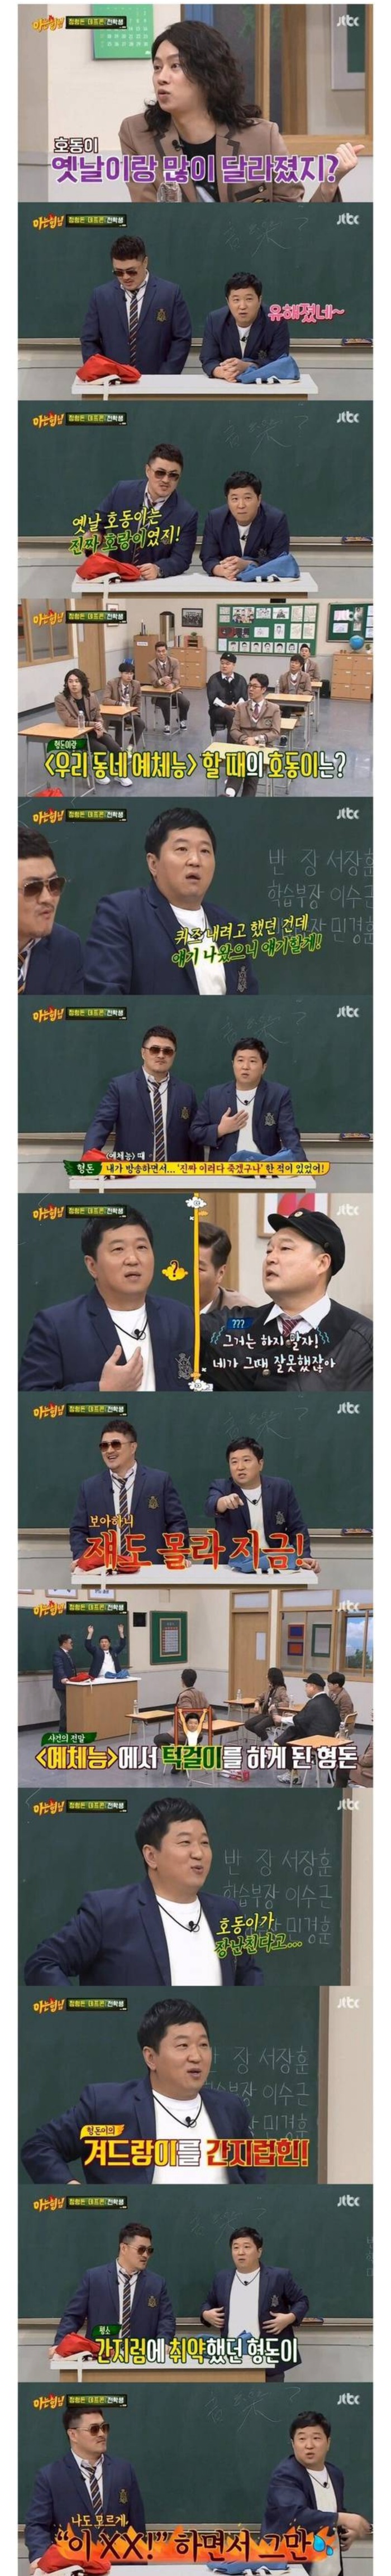 [아는형님(JTBC)] 정형돈이 강호동 뺨때리고 죽을 뻔 한 사연